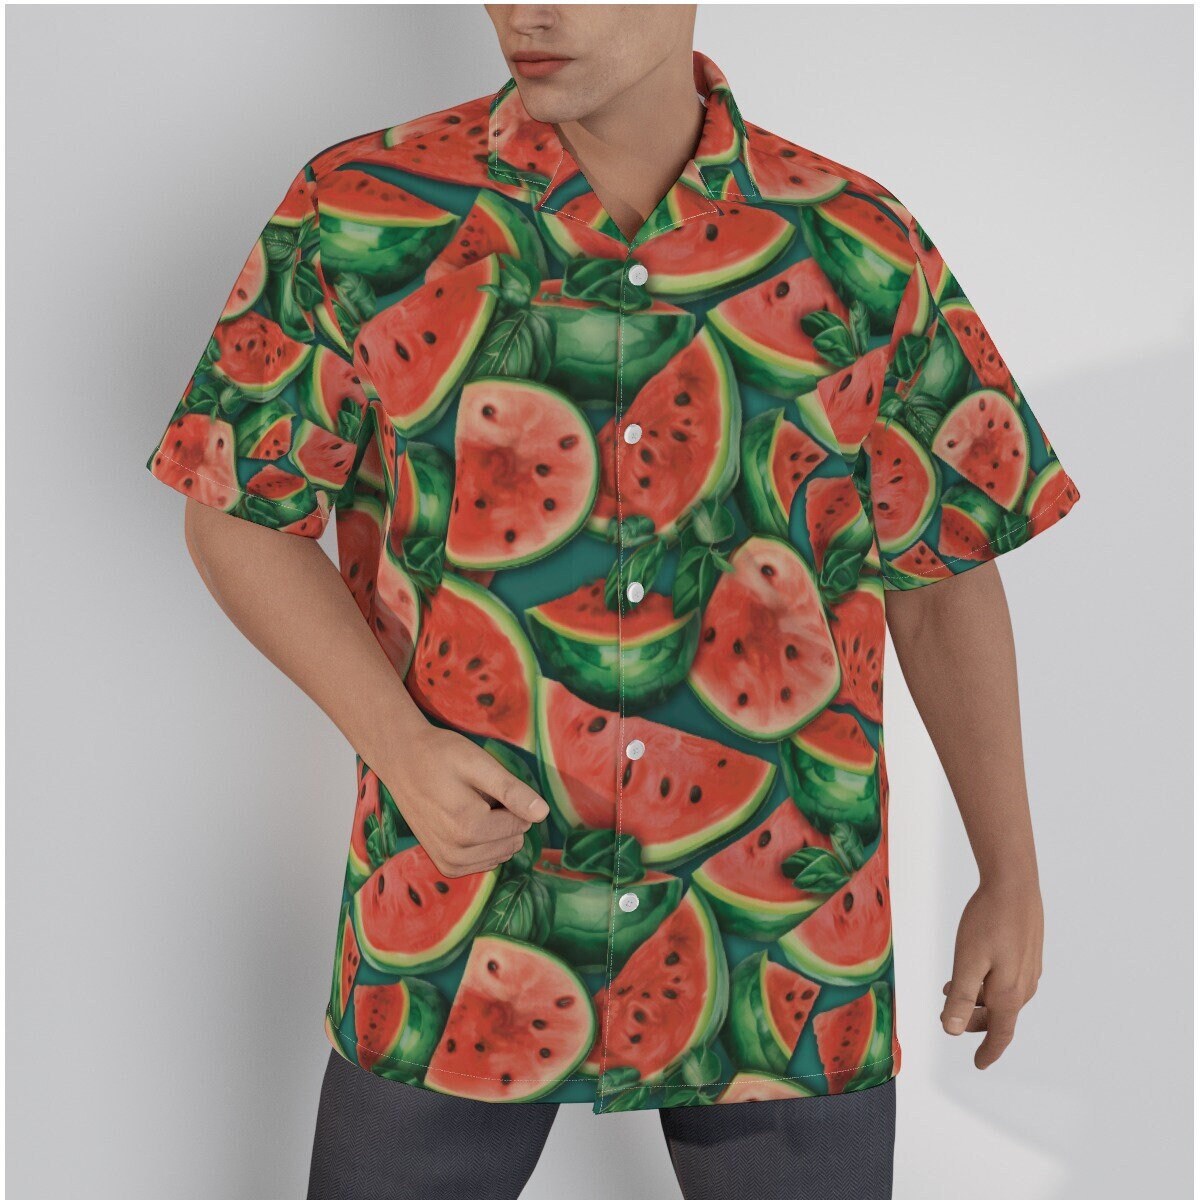 Watermelon Season Hawaiian Shirt, Watermelon Shirt, Watermelon Fashion, Sweet Summer Melon Clothing, Watermelon Season Shirt, Watermelon Top